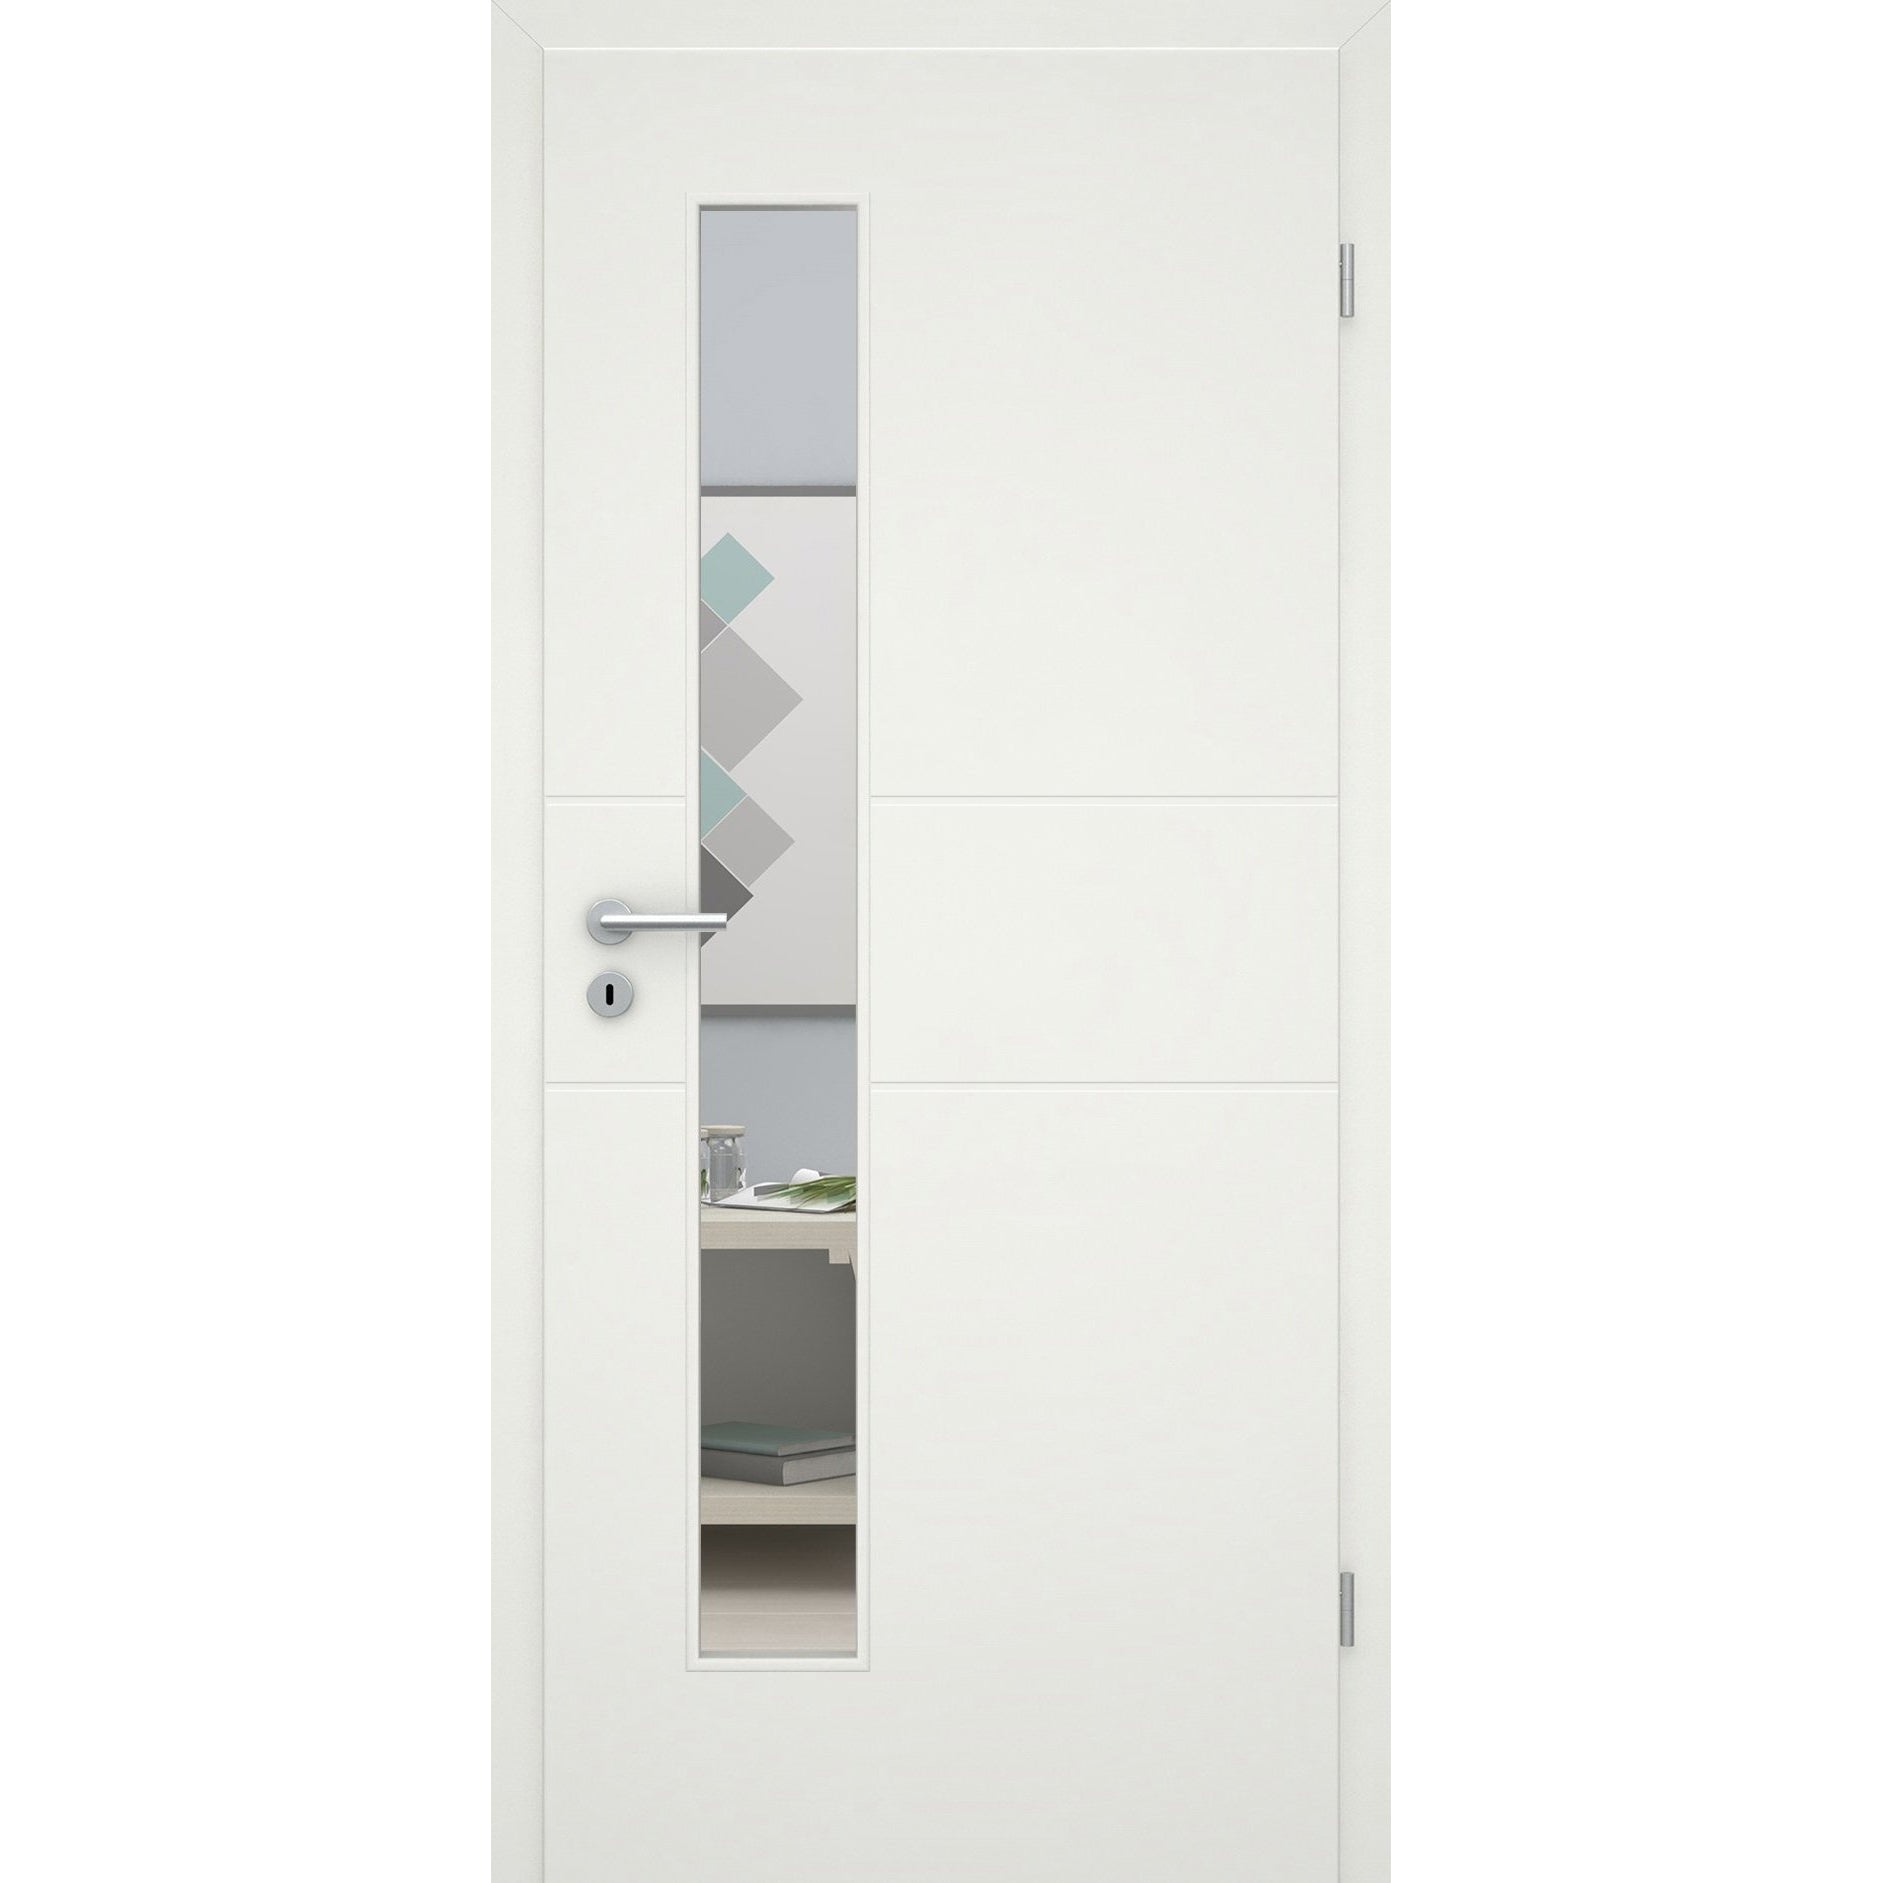 Zimmertür mit Zarge und Lichtausschnittsoft-weiß 2 Rillen Eckkante - Modell Designtür Q21LAS